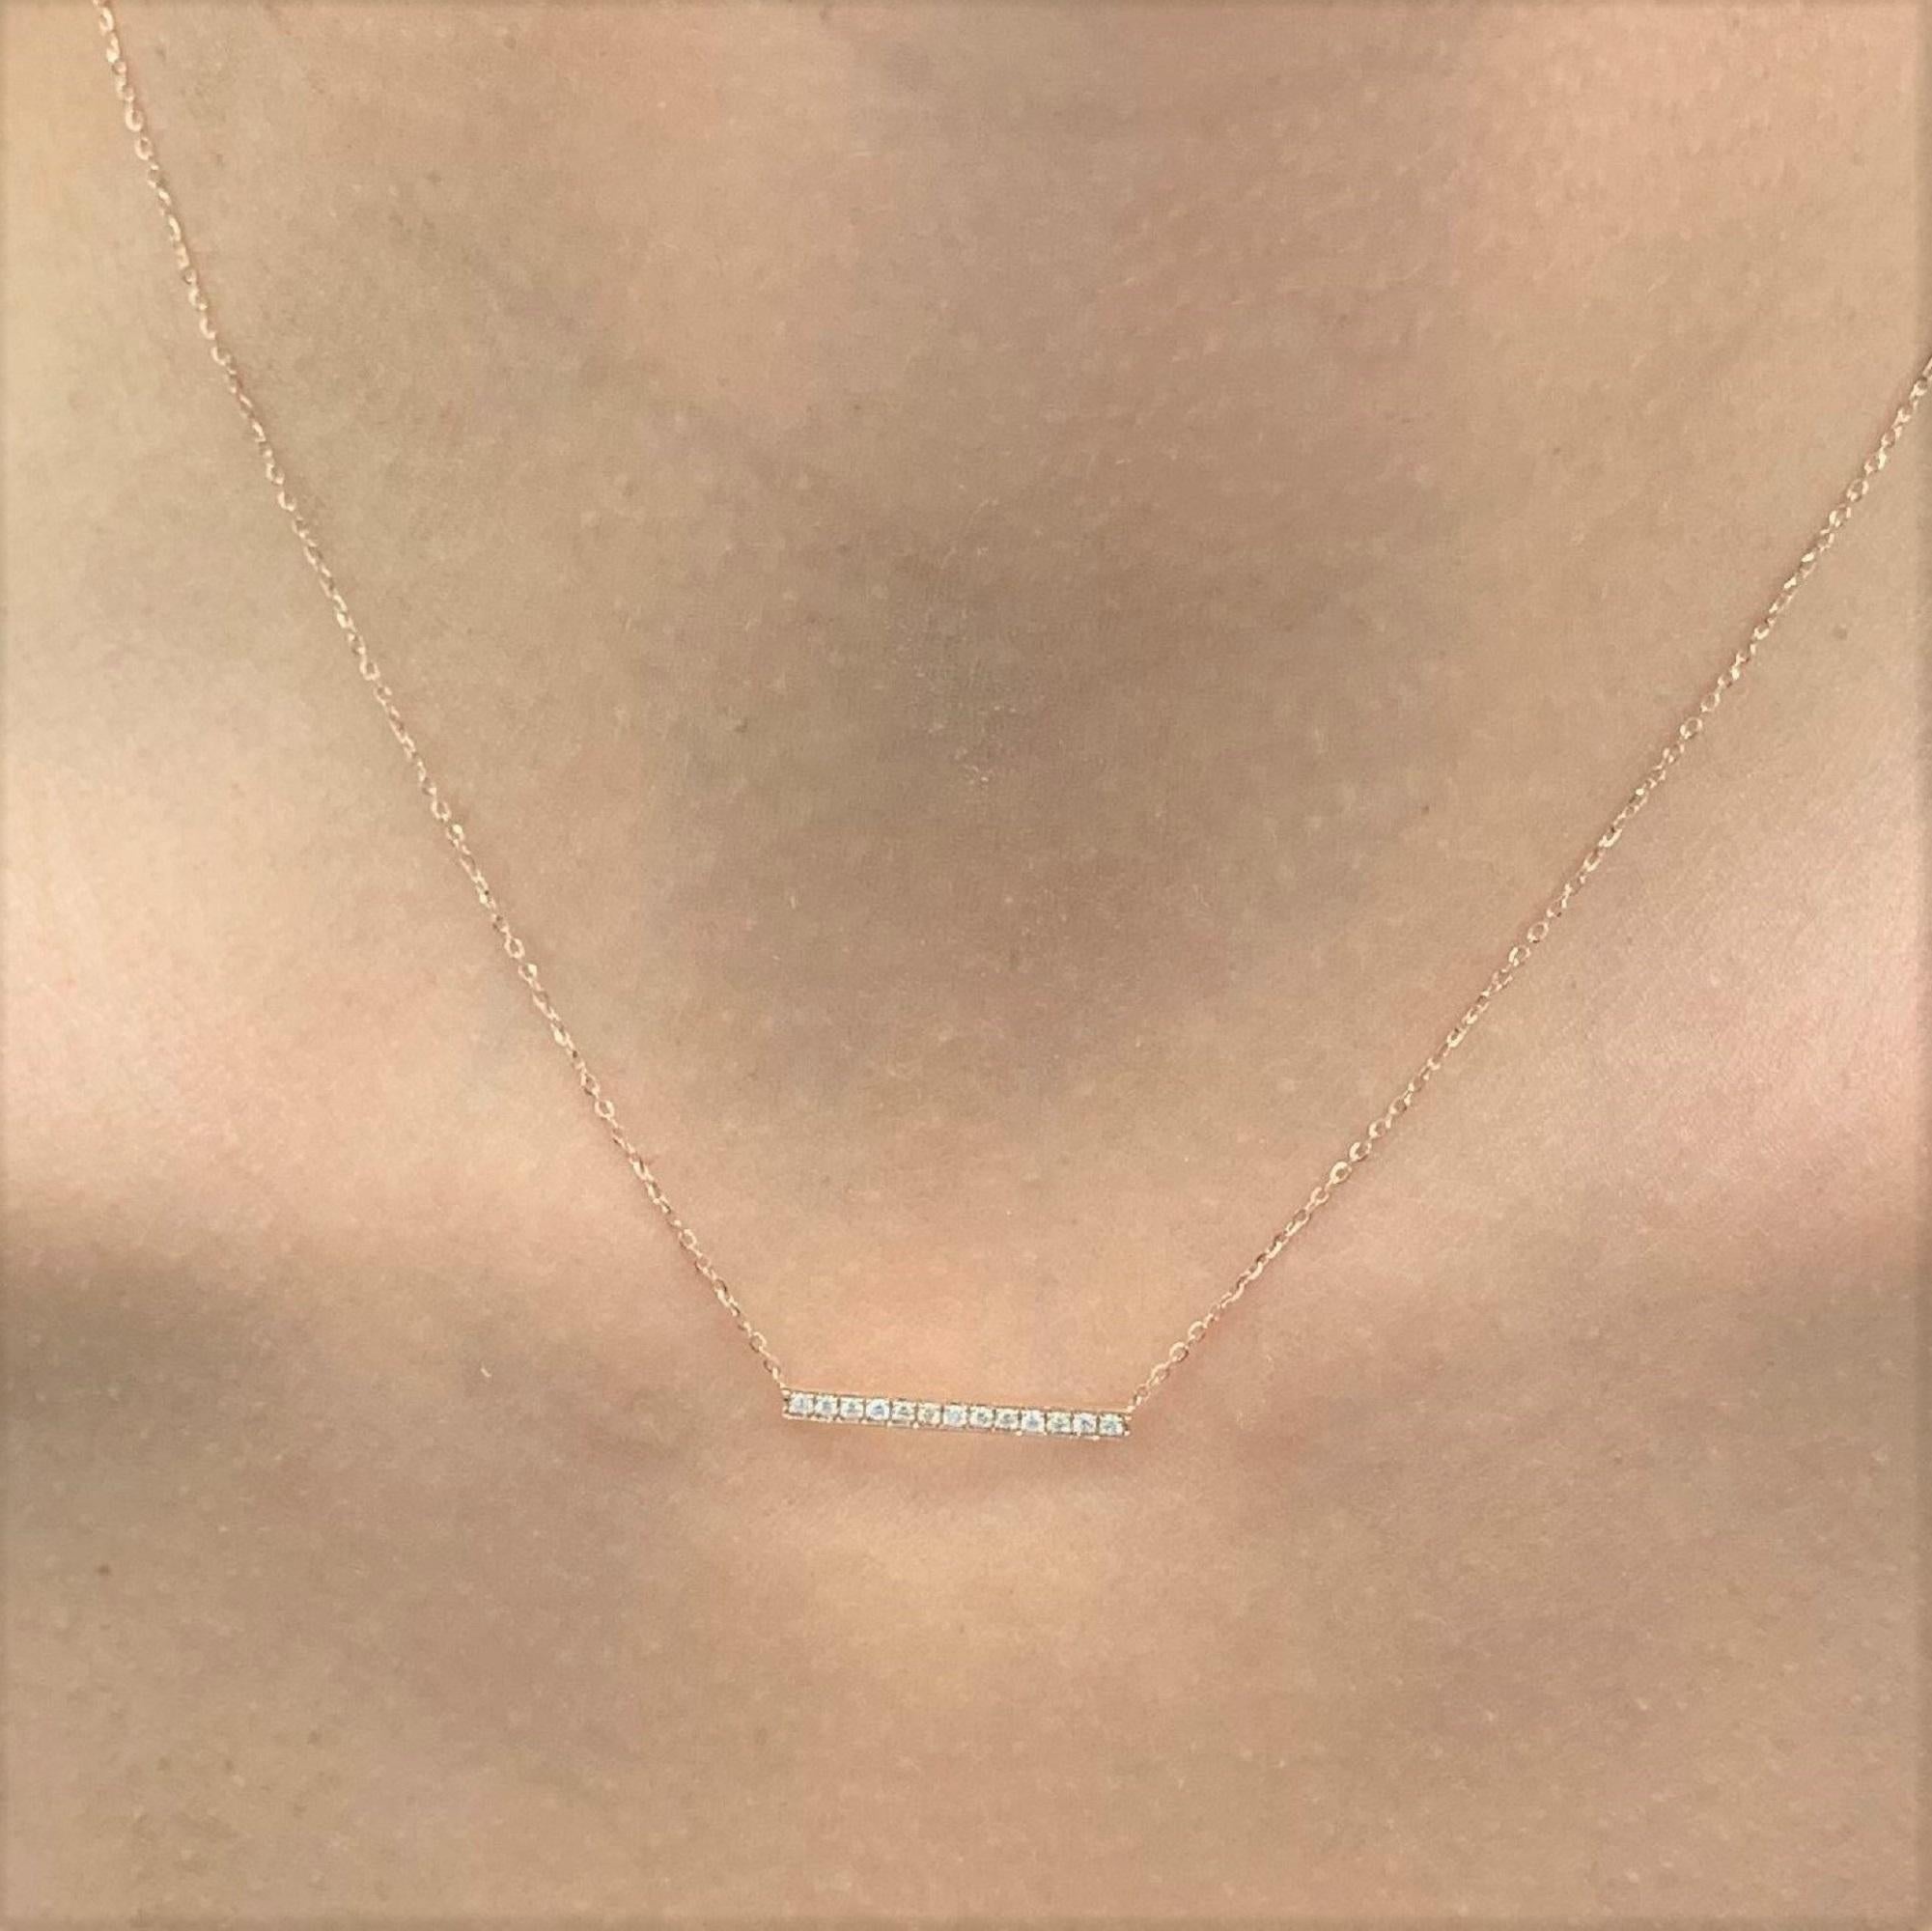 Eine schöne und klassische 14k Gold Diamant Bar Halskette mit 0,10 ct. runden funkelnden natürlichen Diamanten. Farbe und Reinheit des Diamanten ist GH SI1-SI2. Kette misst 18